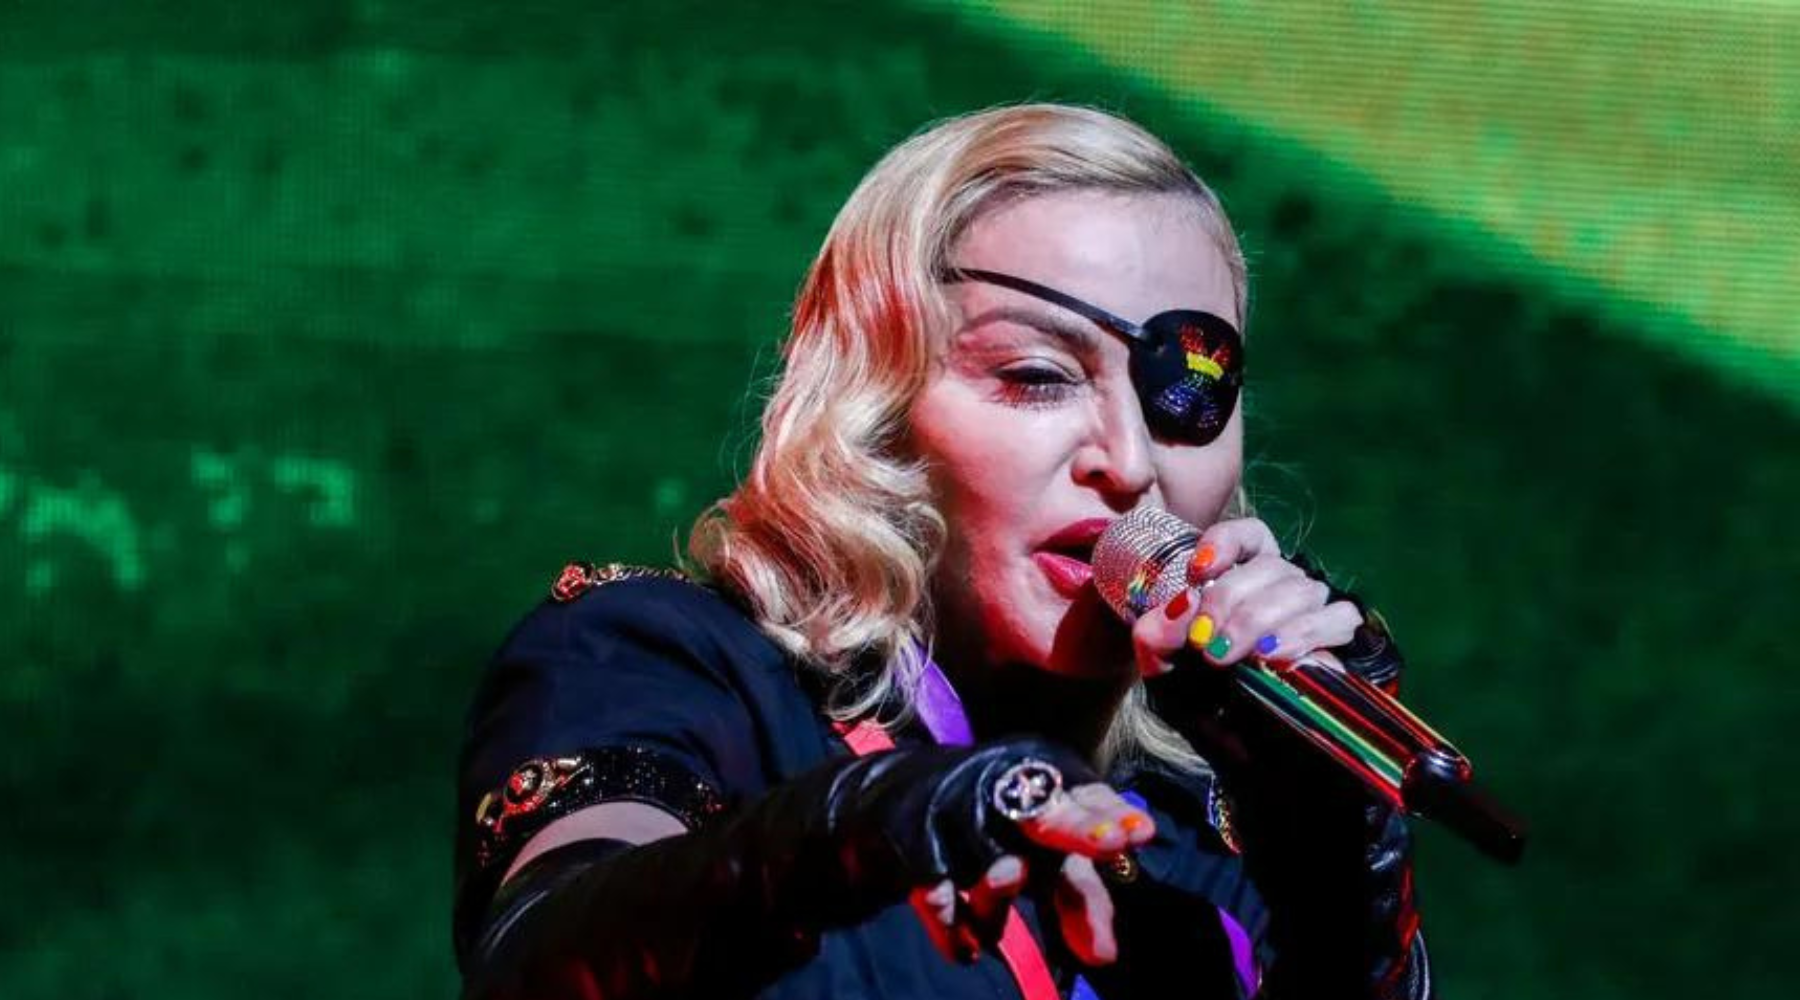 Madonna adia turnê após internação na UTI por causa de infecção bacteriana